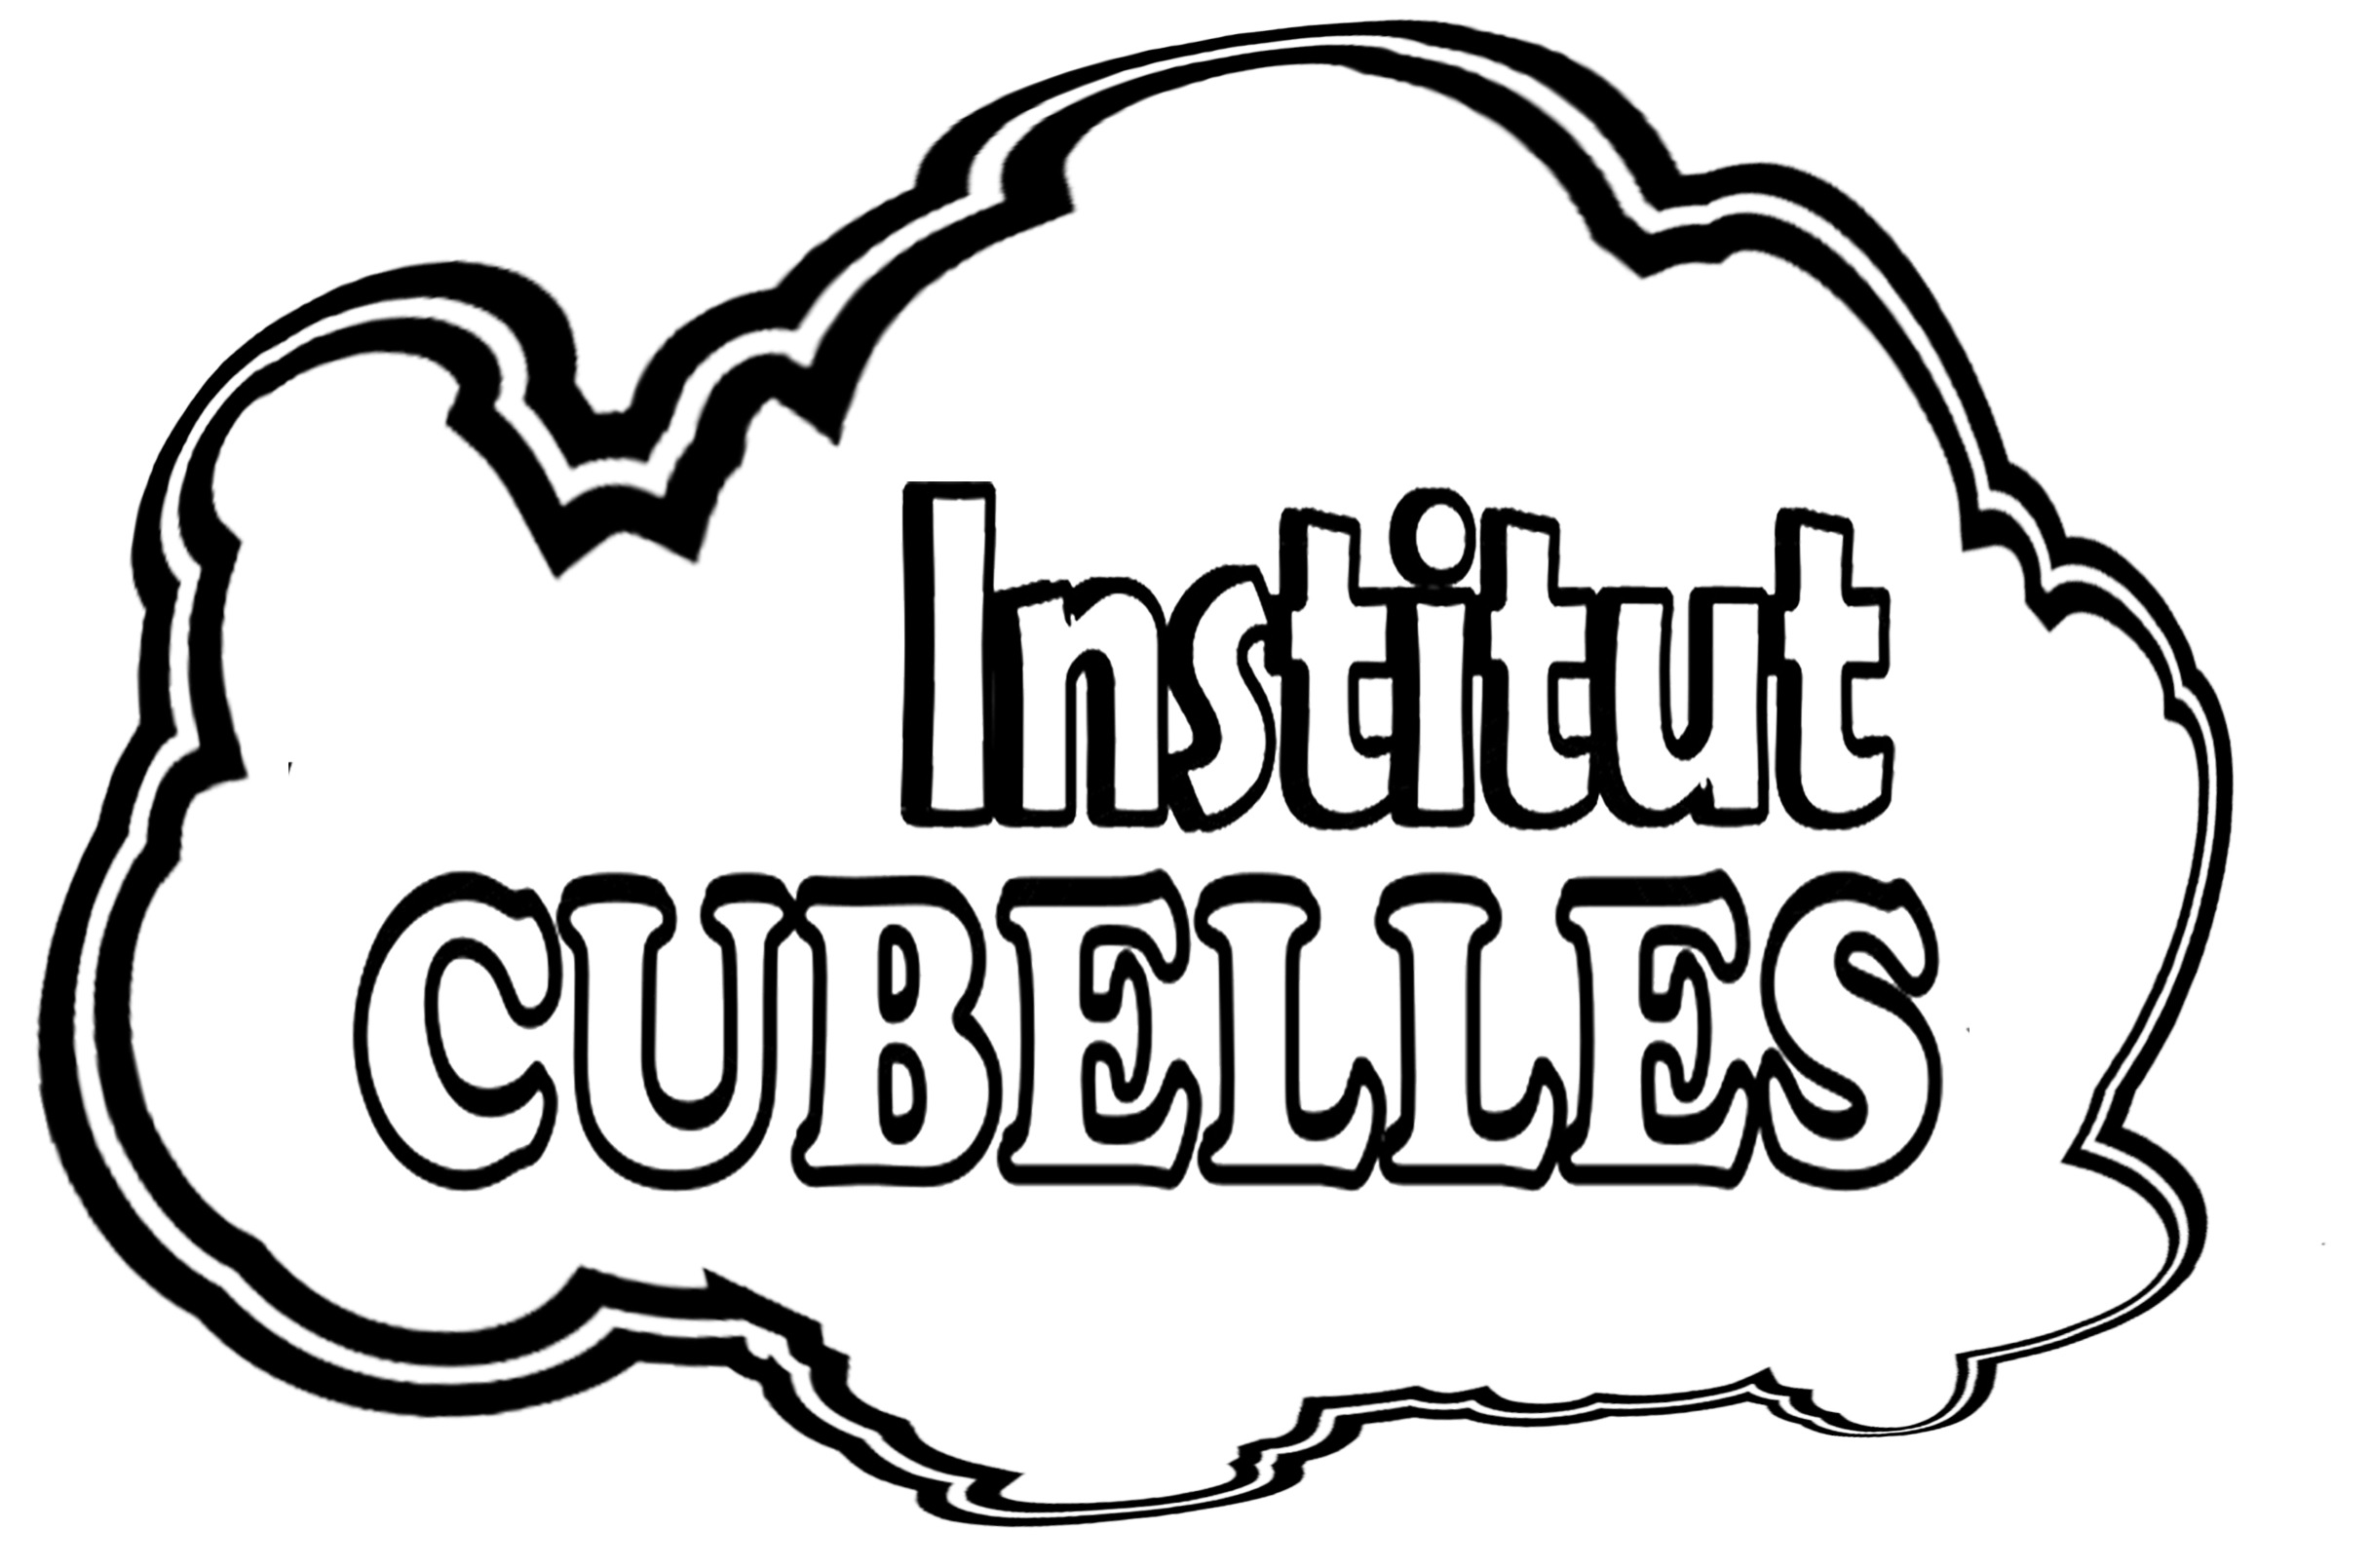 INS Cubelles